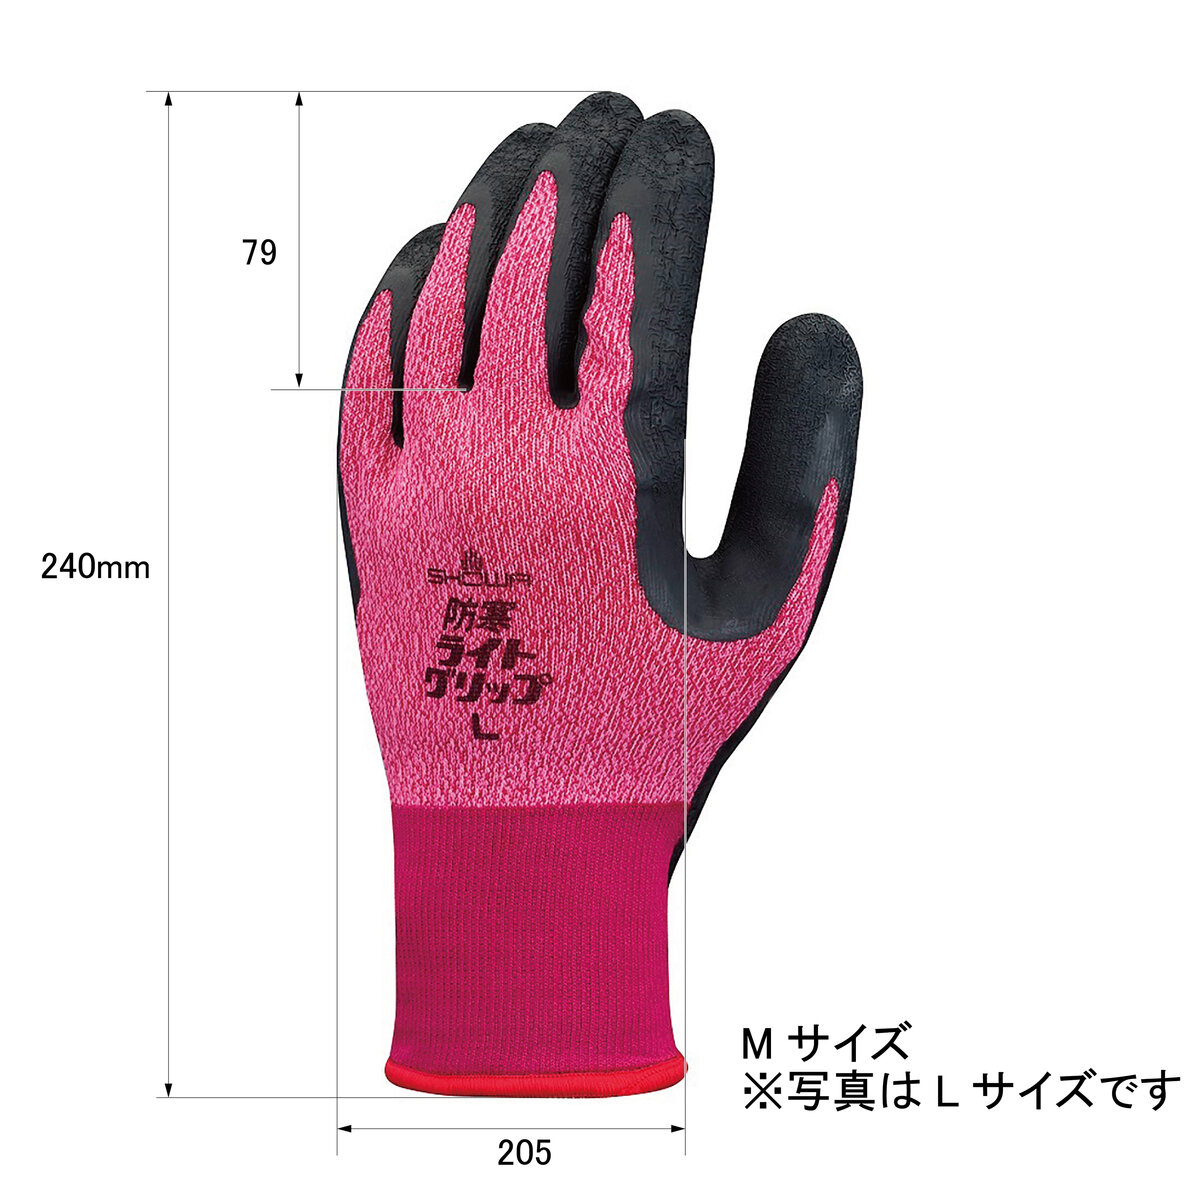 防寒作業手袋 Mサイズ 1双